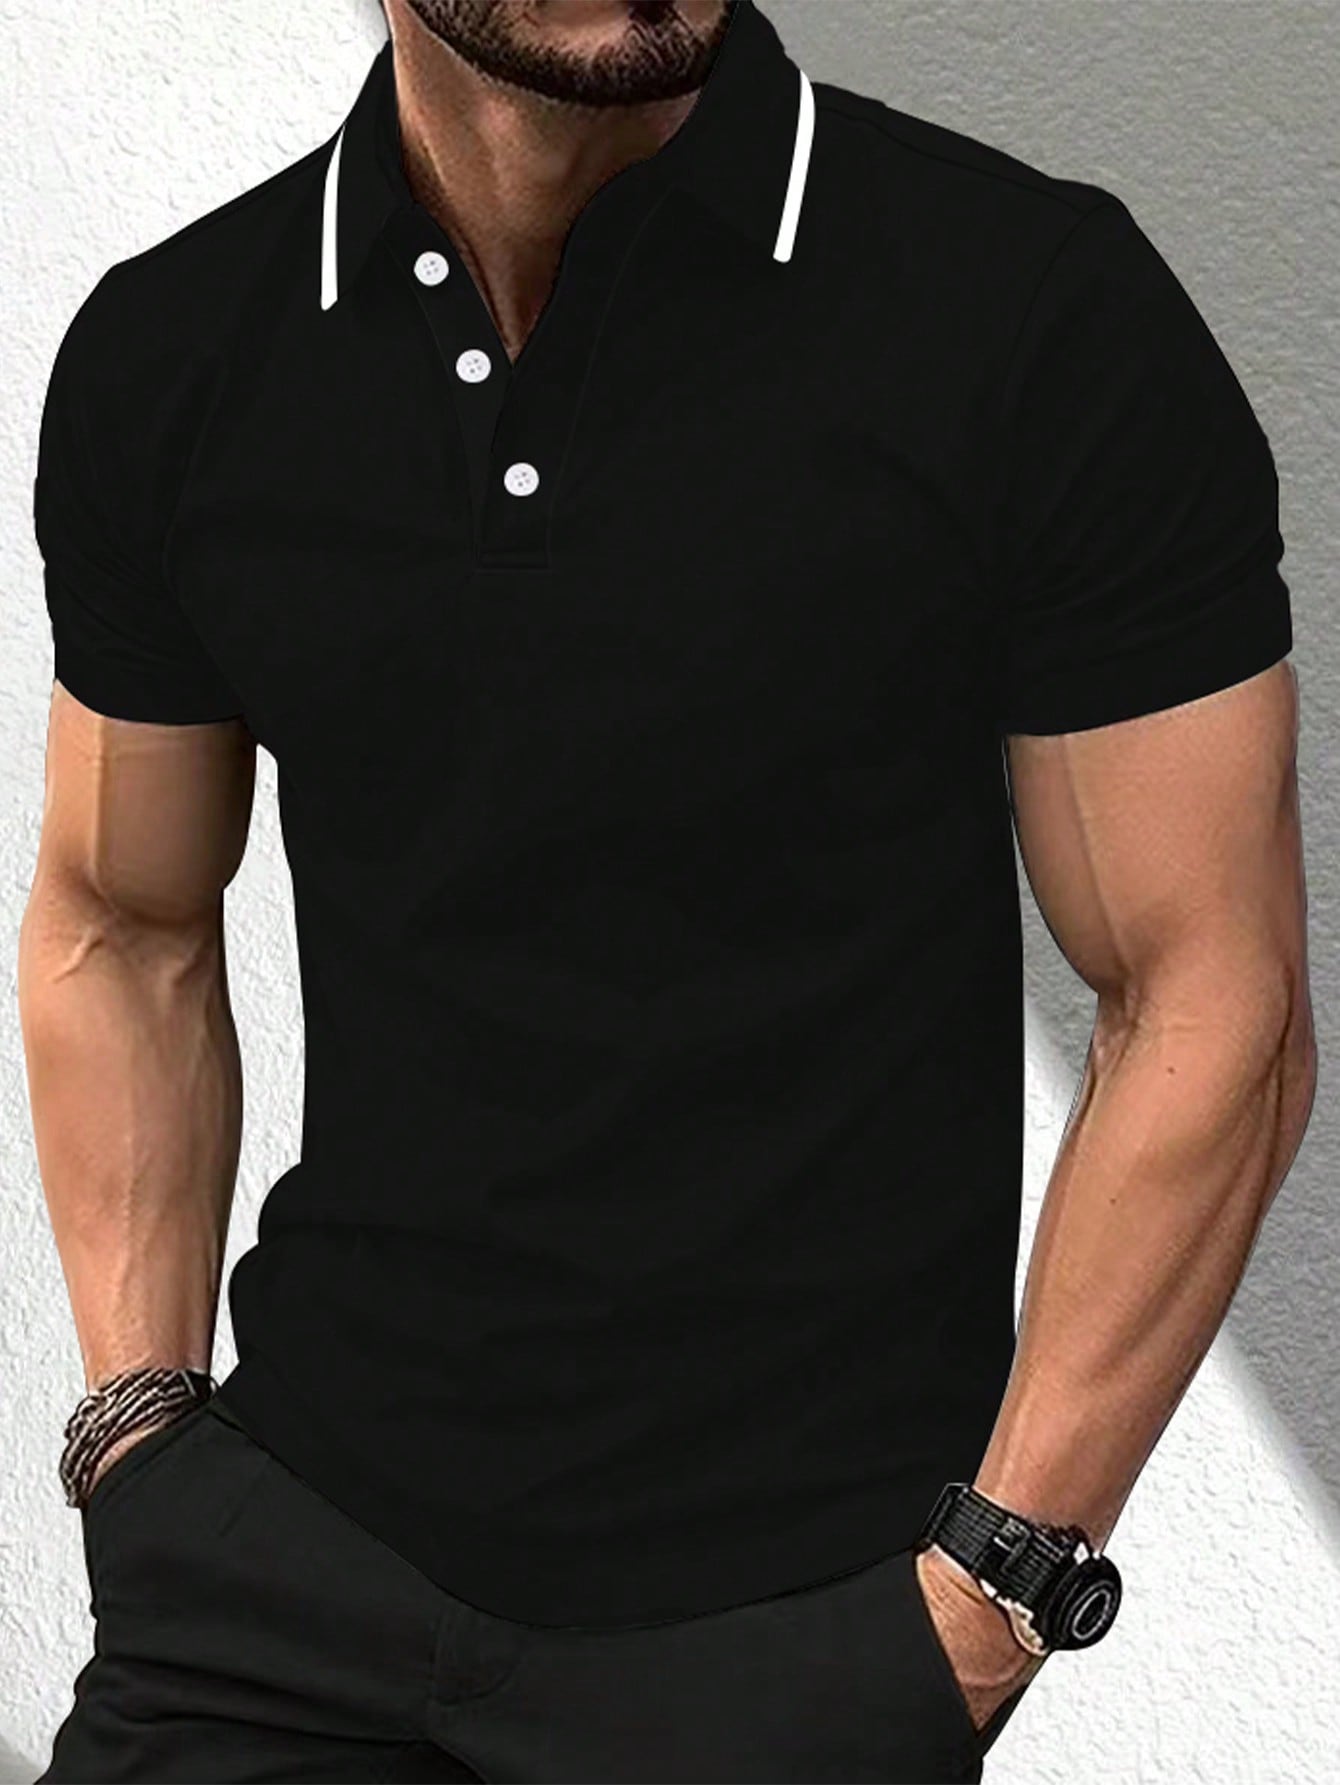 Мужская повседневная рубашка-поло с короткими рукавами и планкой на пуговицах Manfinity Mode, черный мужская рубашка с объемным рисунком морских животных морских рыб летняя повседневная свободная рубашка с короткими рукавами размеры до